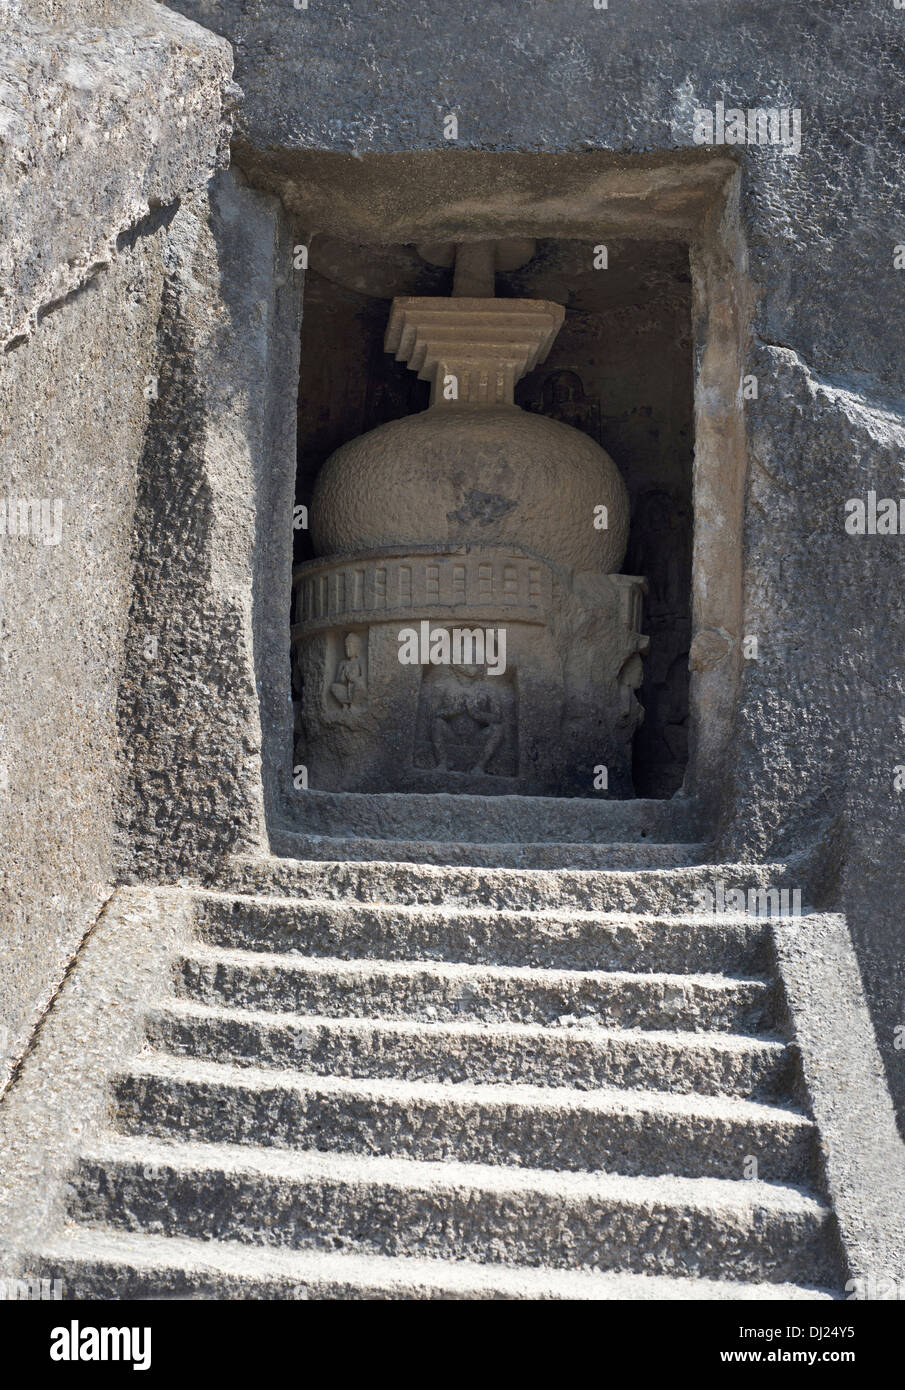 Small shrine. Kanheri Caves, Borivali, Mumbai, Maharashtra, India Stock Photo